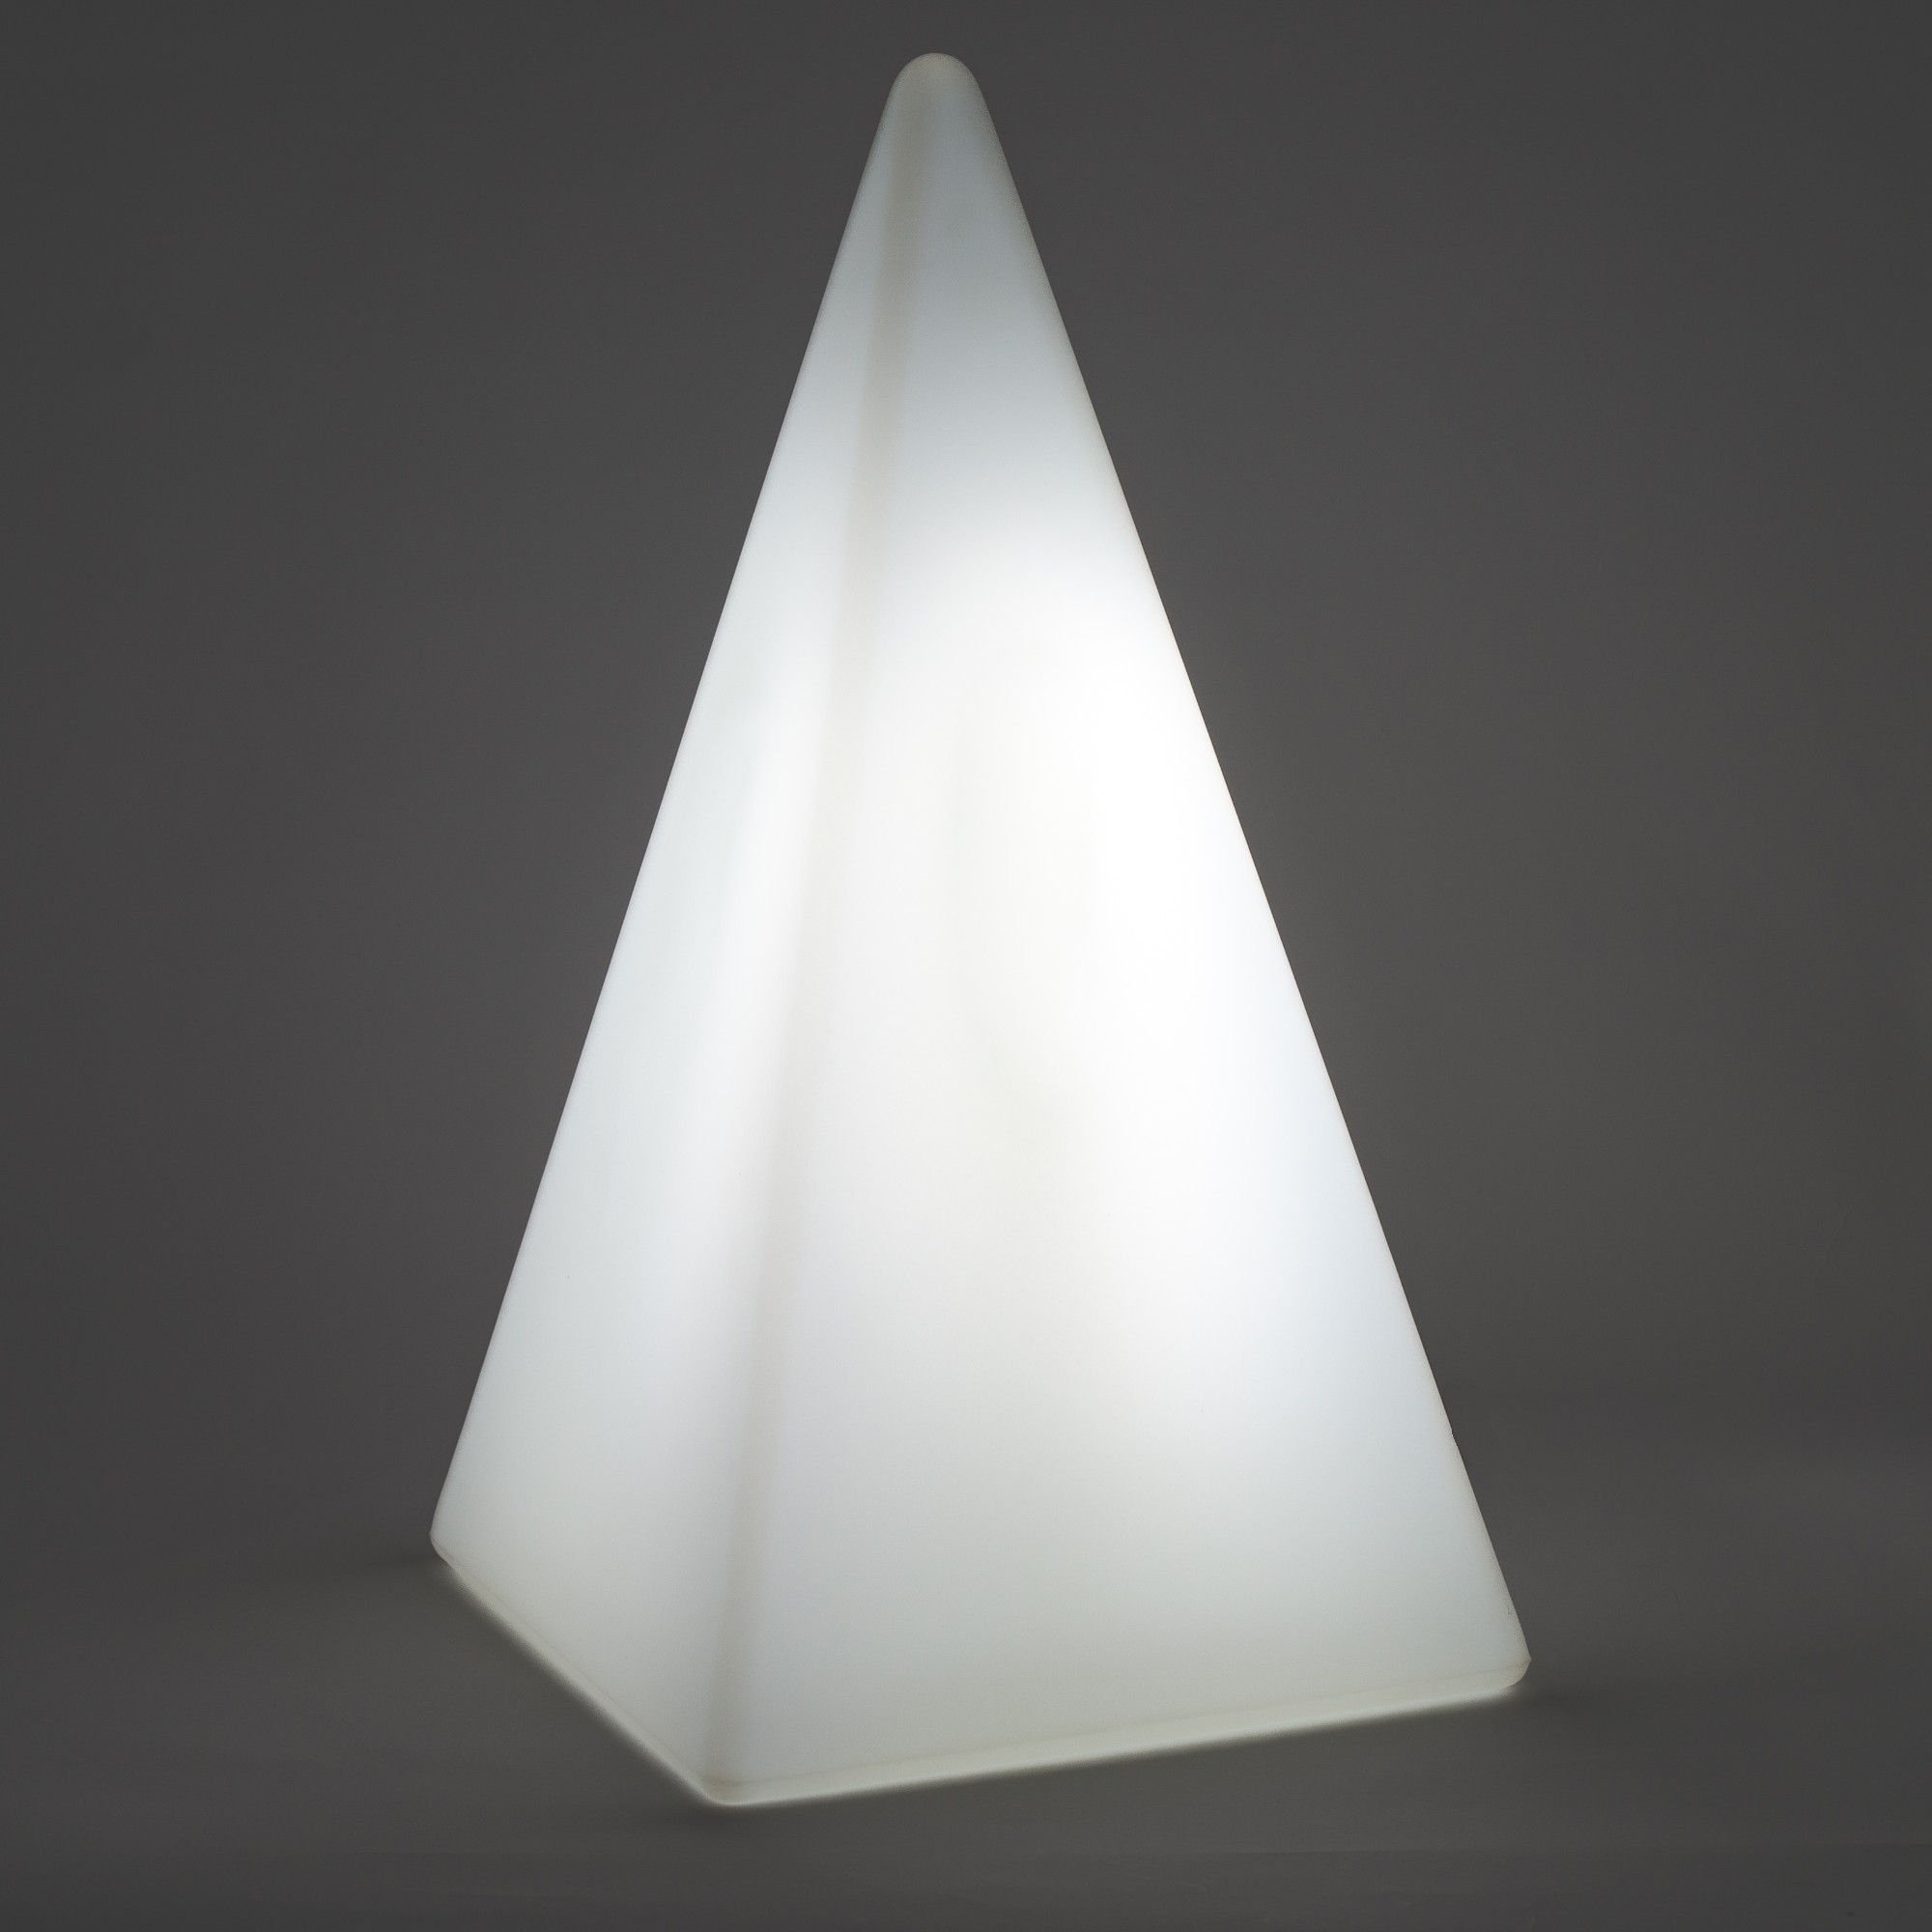 70201 Standleuchte Pyramide 54 cm der Firma EPSTEIN Design Leuchten